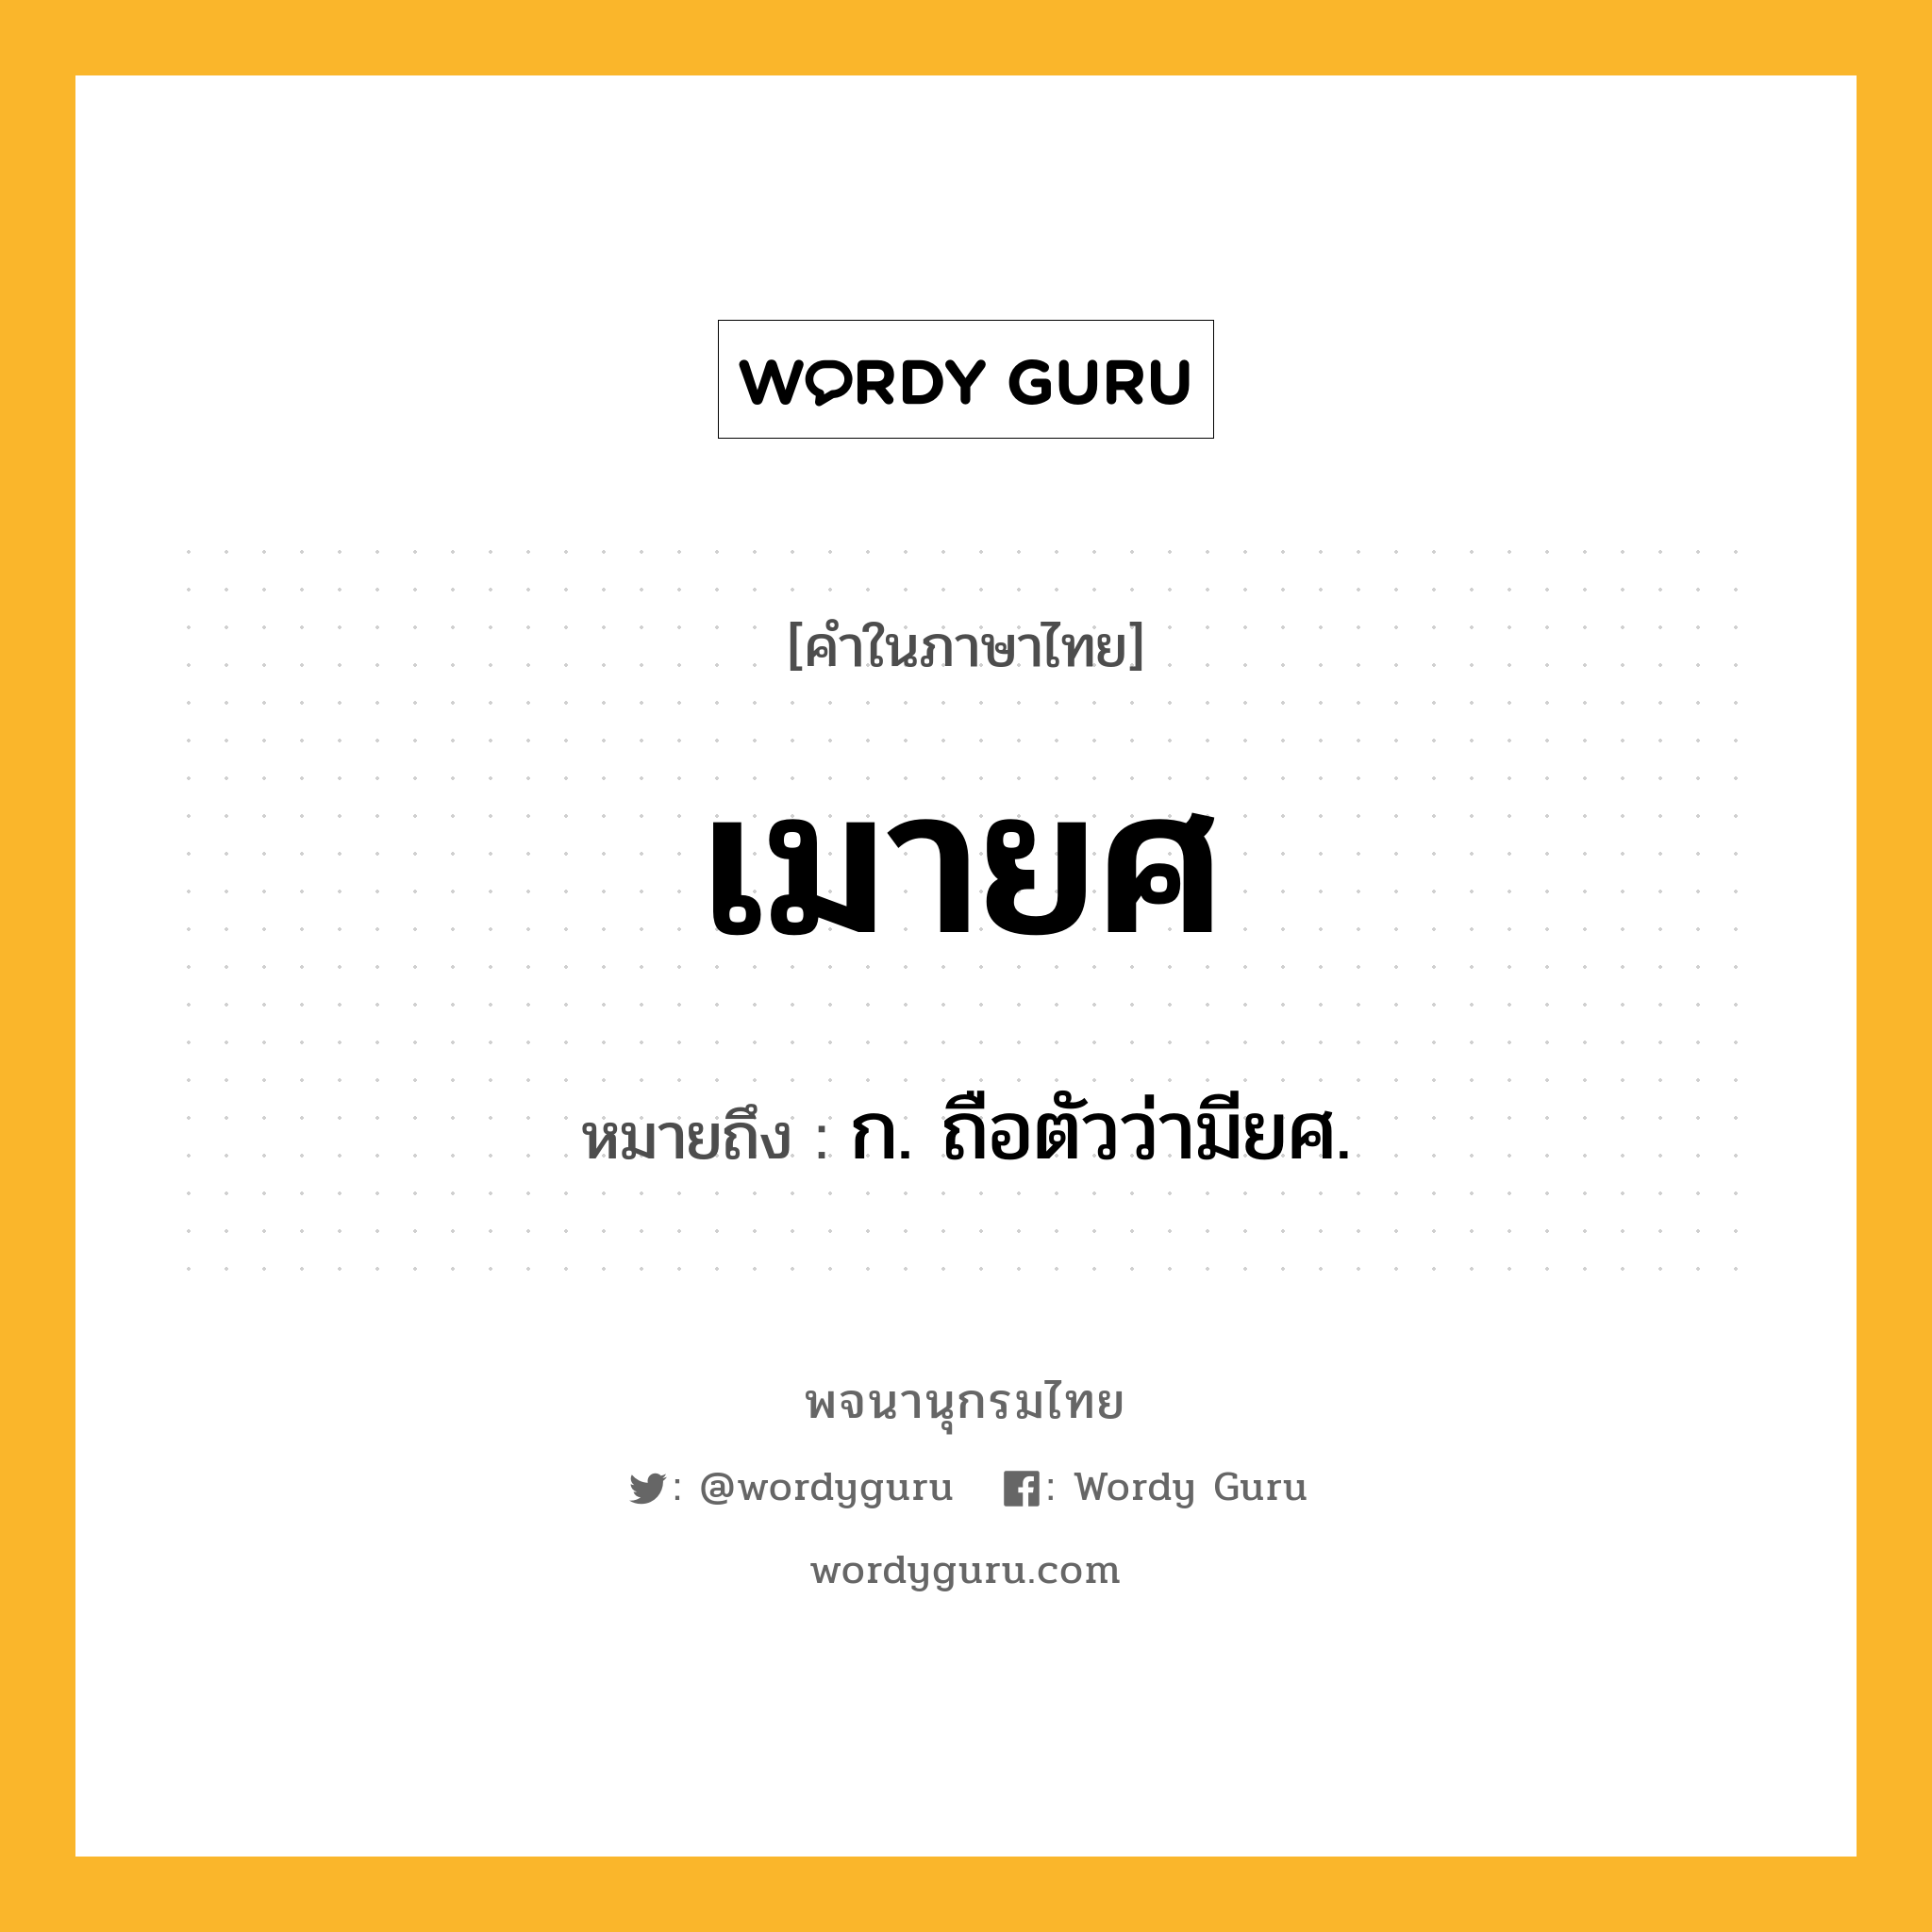 เมายศ ความหมาย หมายถึงอะไร?, คำในภาษาไทย เมายศ หมายถึง ก. ถือตัวว่ามียศ.